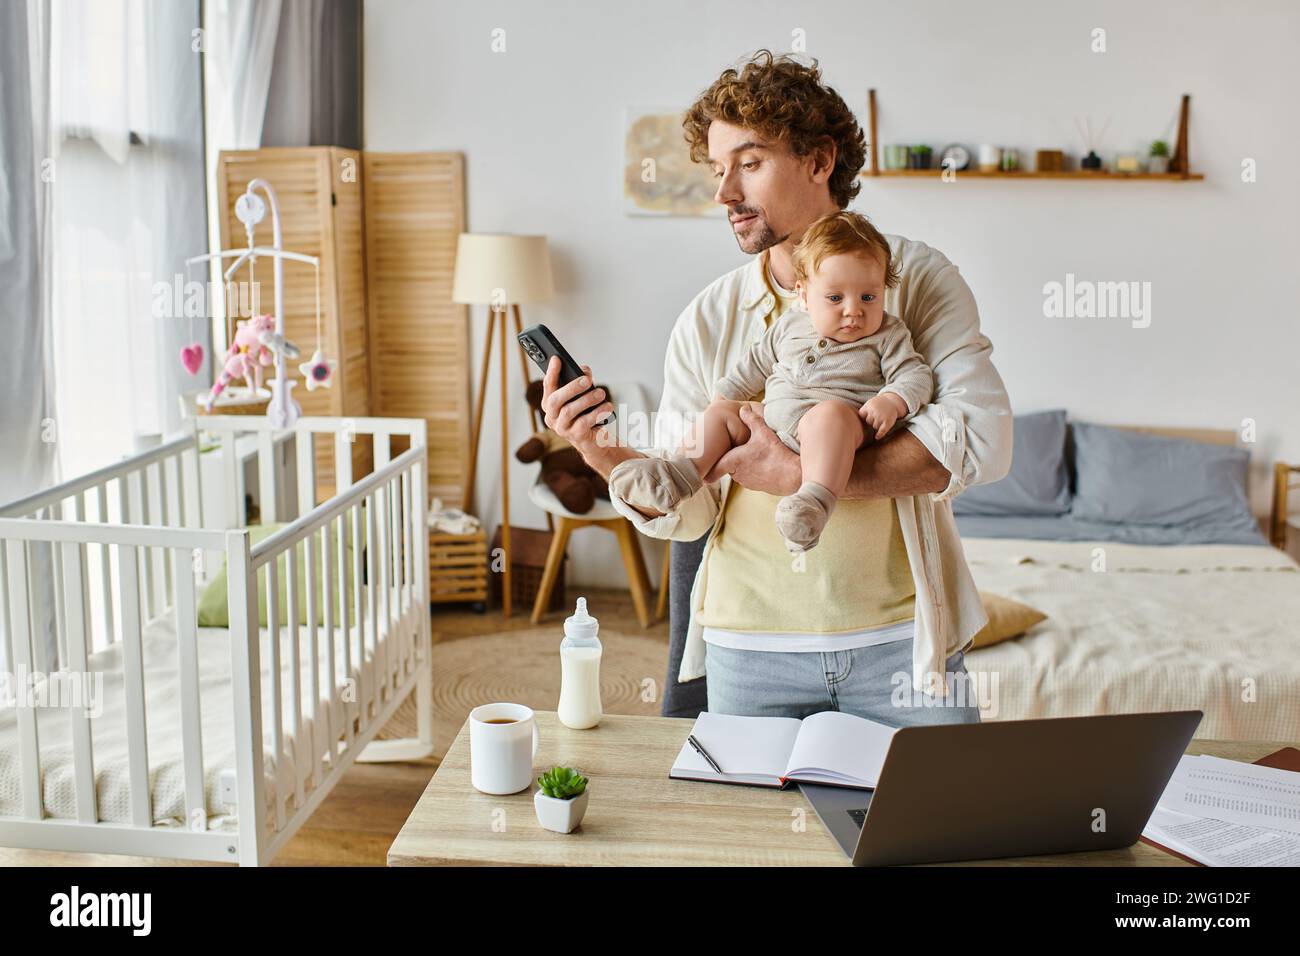 Viel beschäftigter alleinstehender Vater hält den Kleinkind fest und benutzt das Smartphone in der Nähe des Laptops und die Babyflasche auf dem Schreibtisch Stockfoto